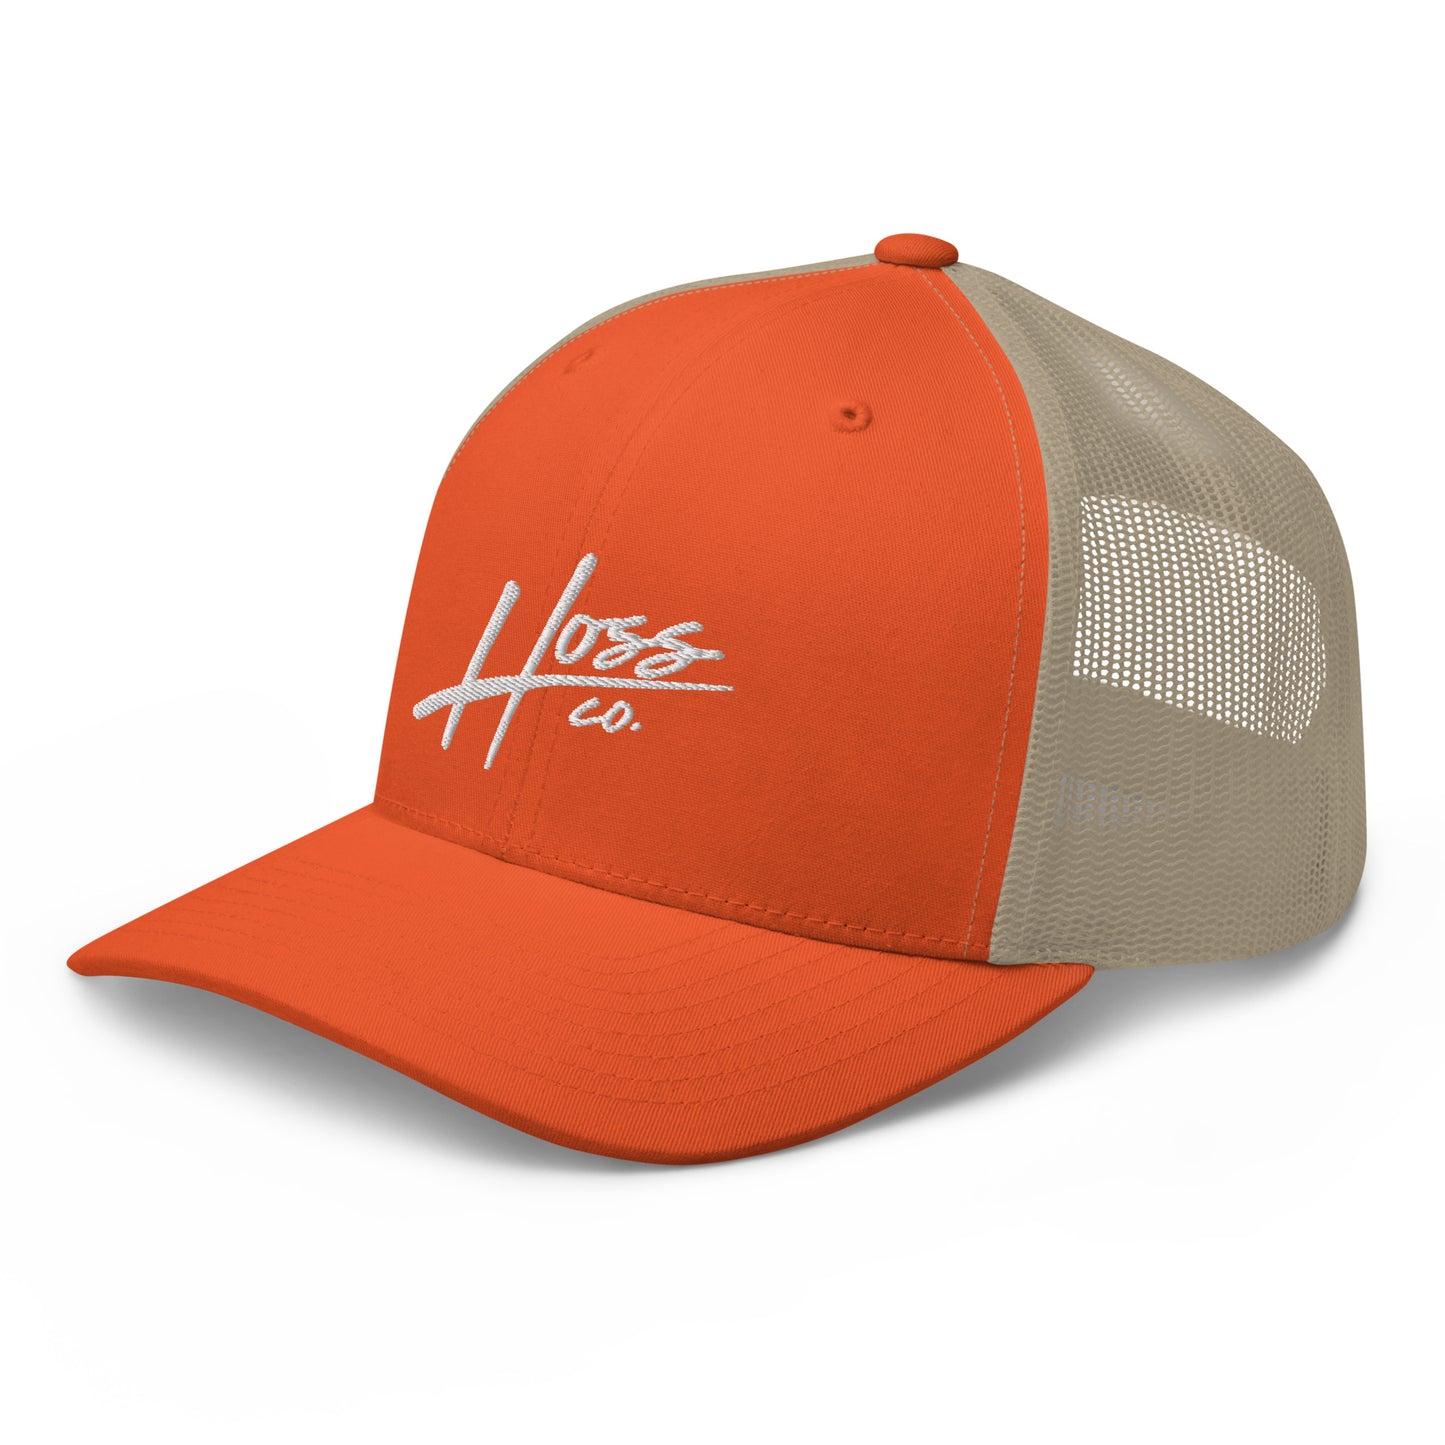 Hoss Orange/Khaki Trucker Cap